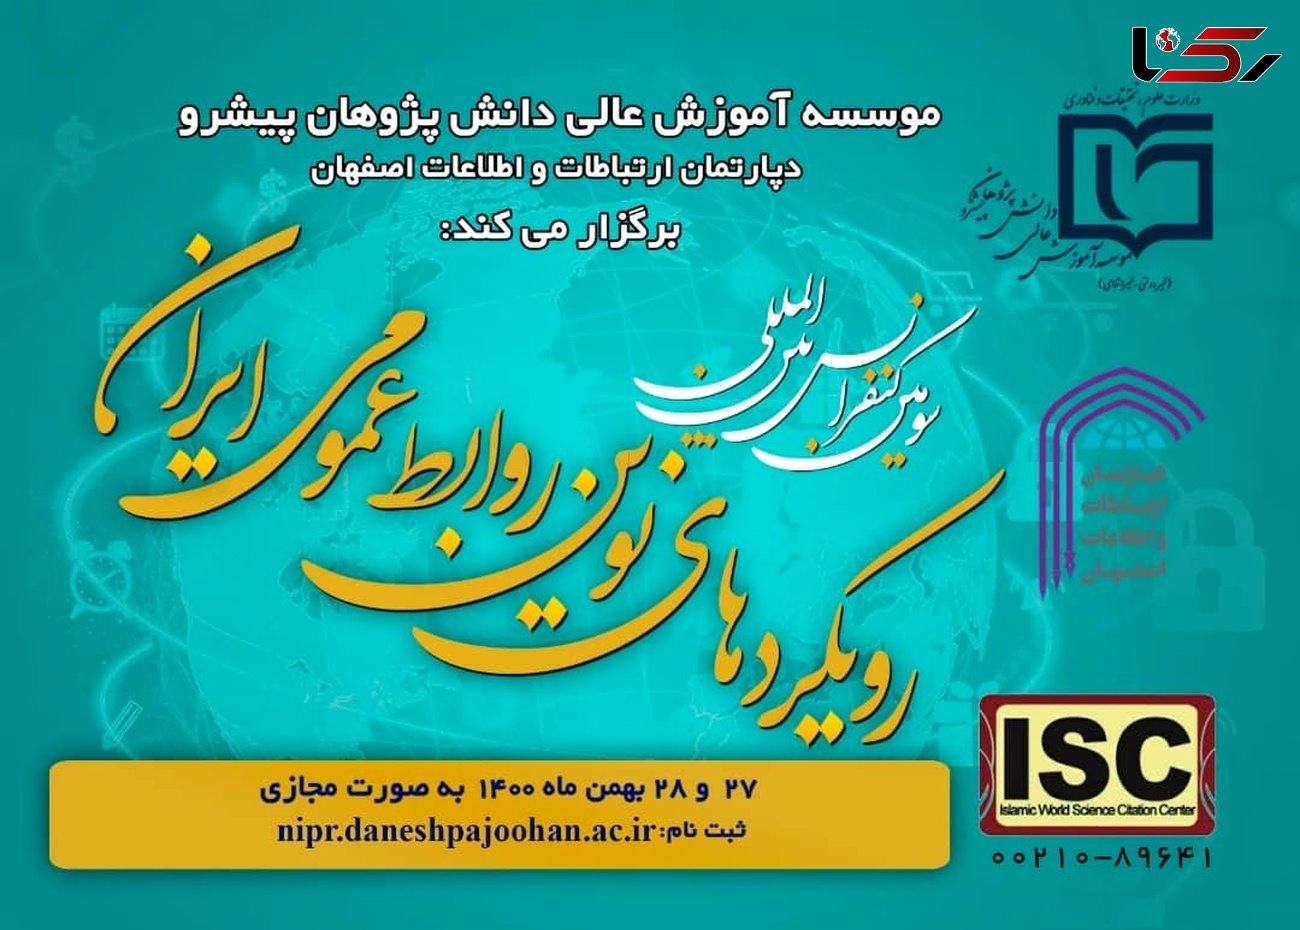 سومین کنفرانس بین المللی رویکردهای نوین روابط عمومی ایران برگزار می شود